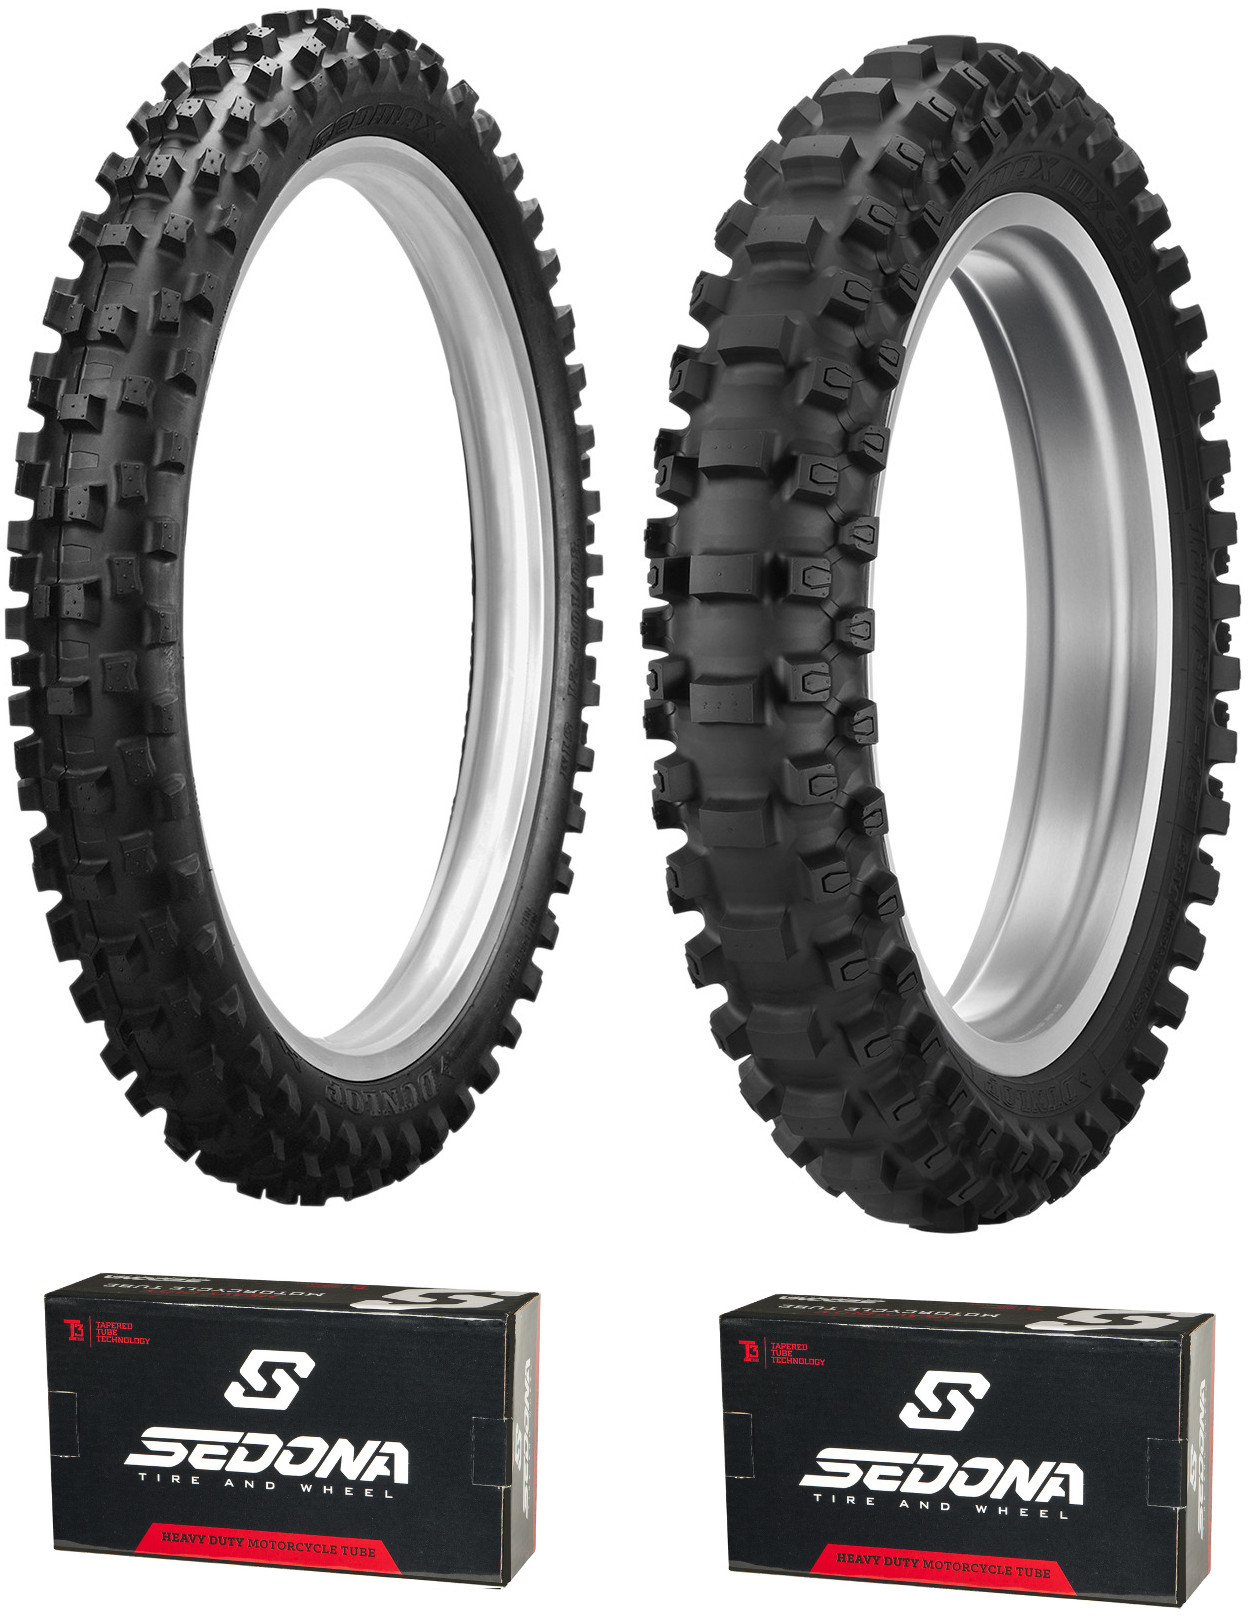 MX3S 80/100-21 & MX33 120/90-18 Tire Kit - w/ HD Sedona Tubes - Click Image to Close